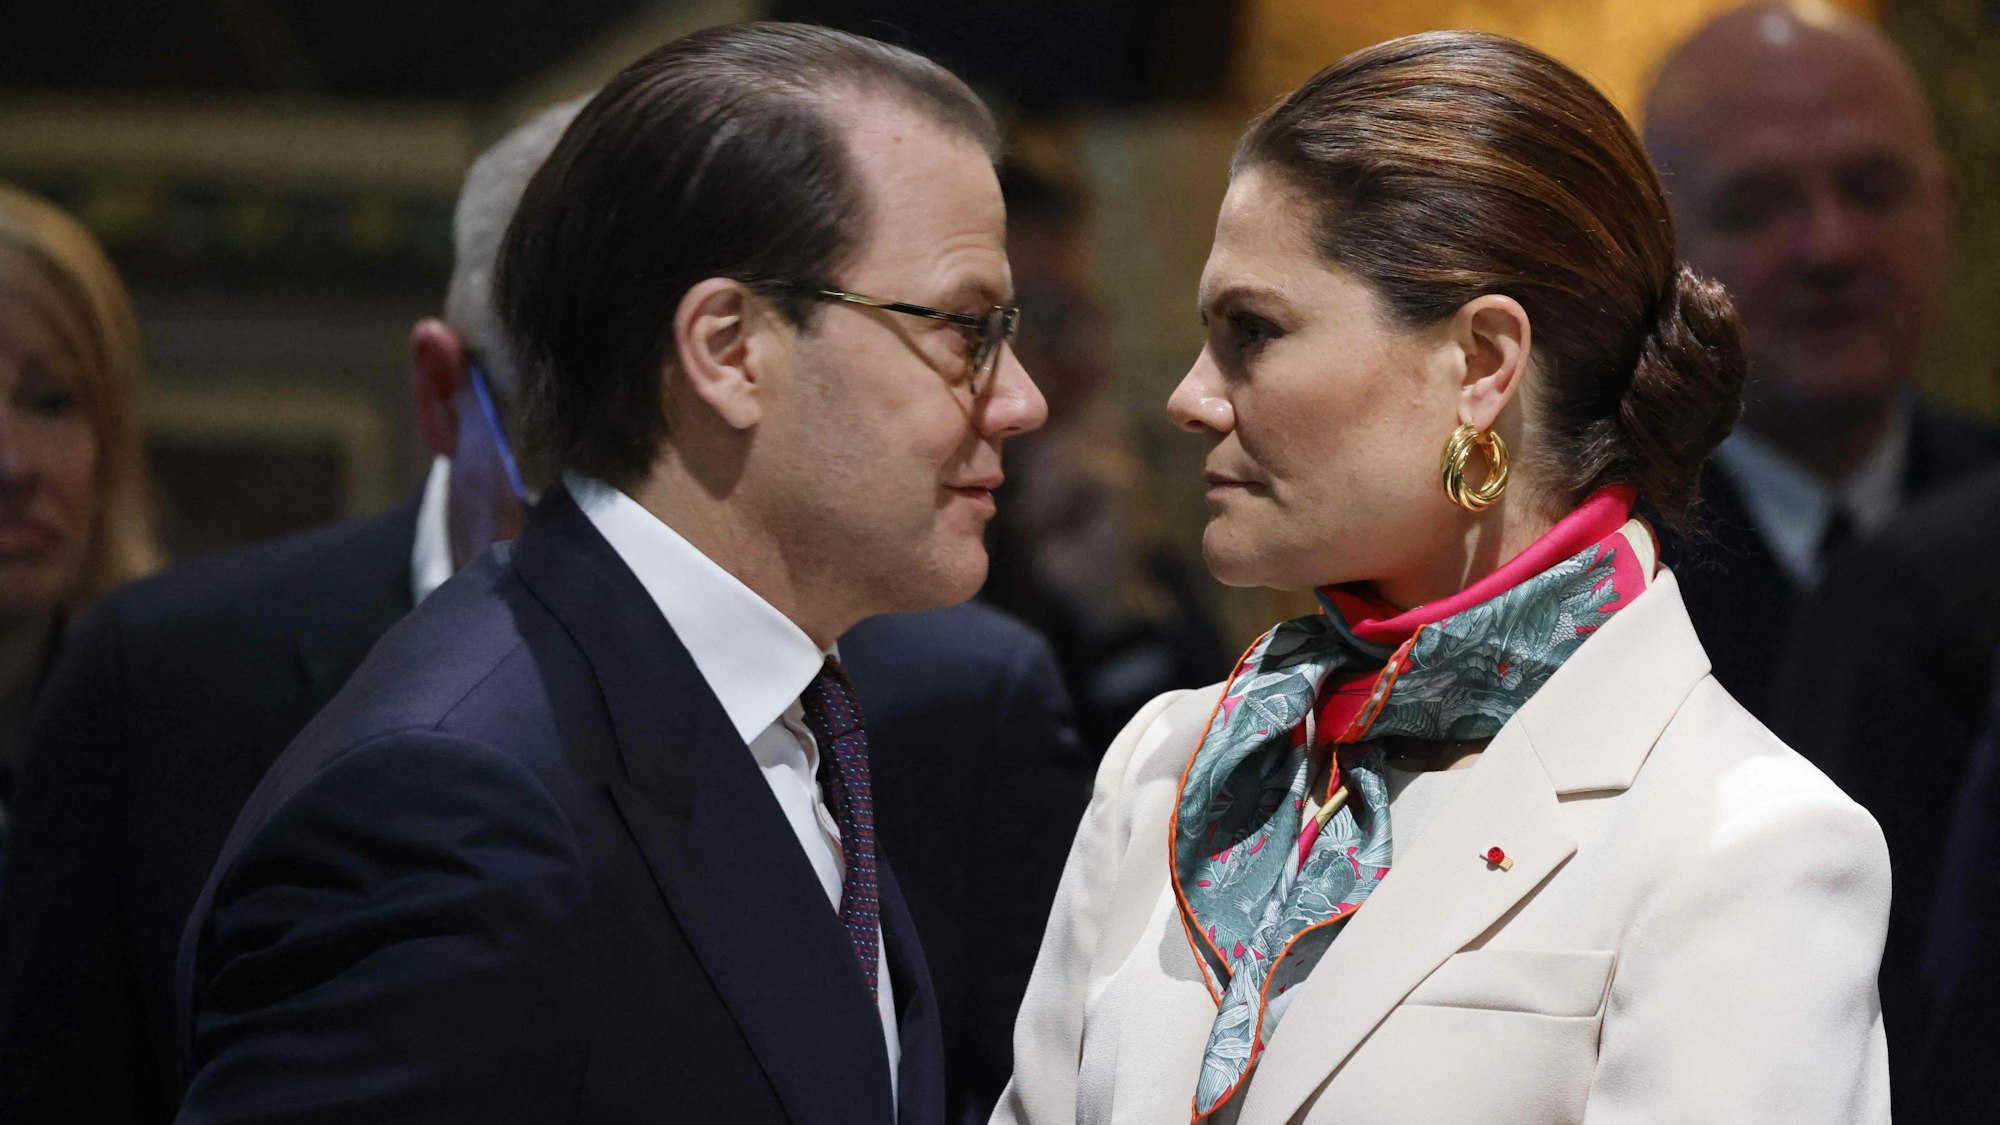 Prinz Daniel und Kronprinzessin Victoria erwarten den französischen Präsidenten und den schwedischen König beim französisch-schwedischen Wirtschaftsforum.